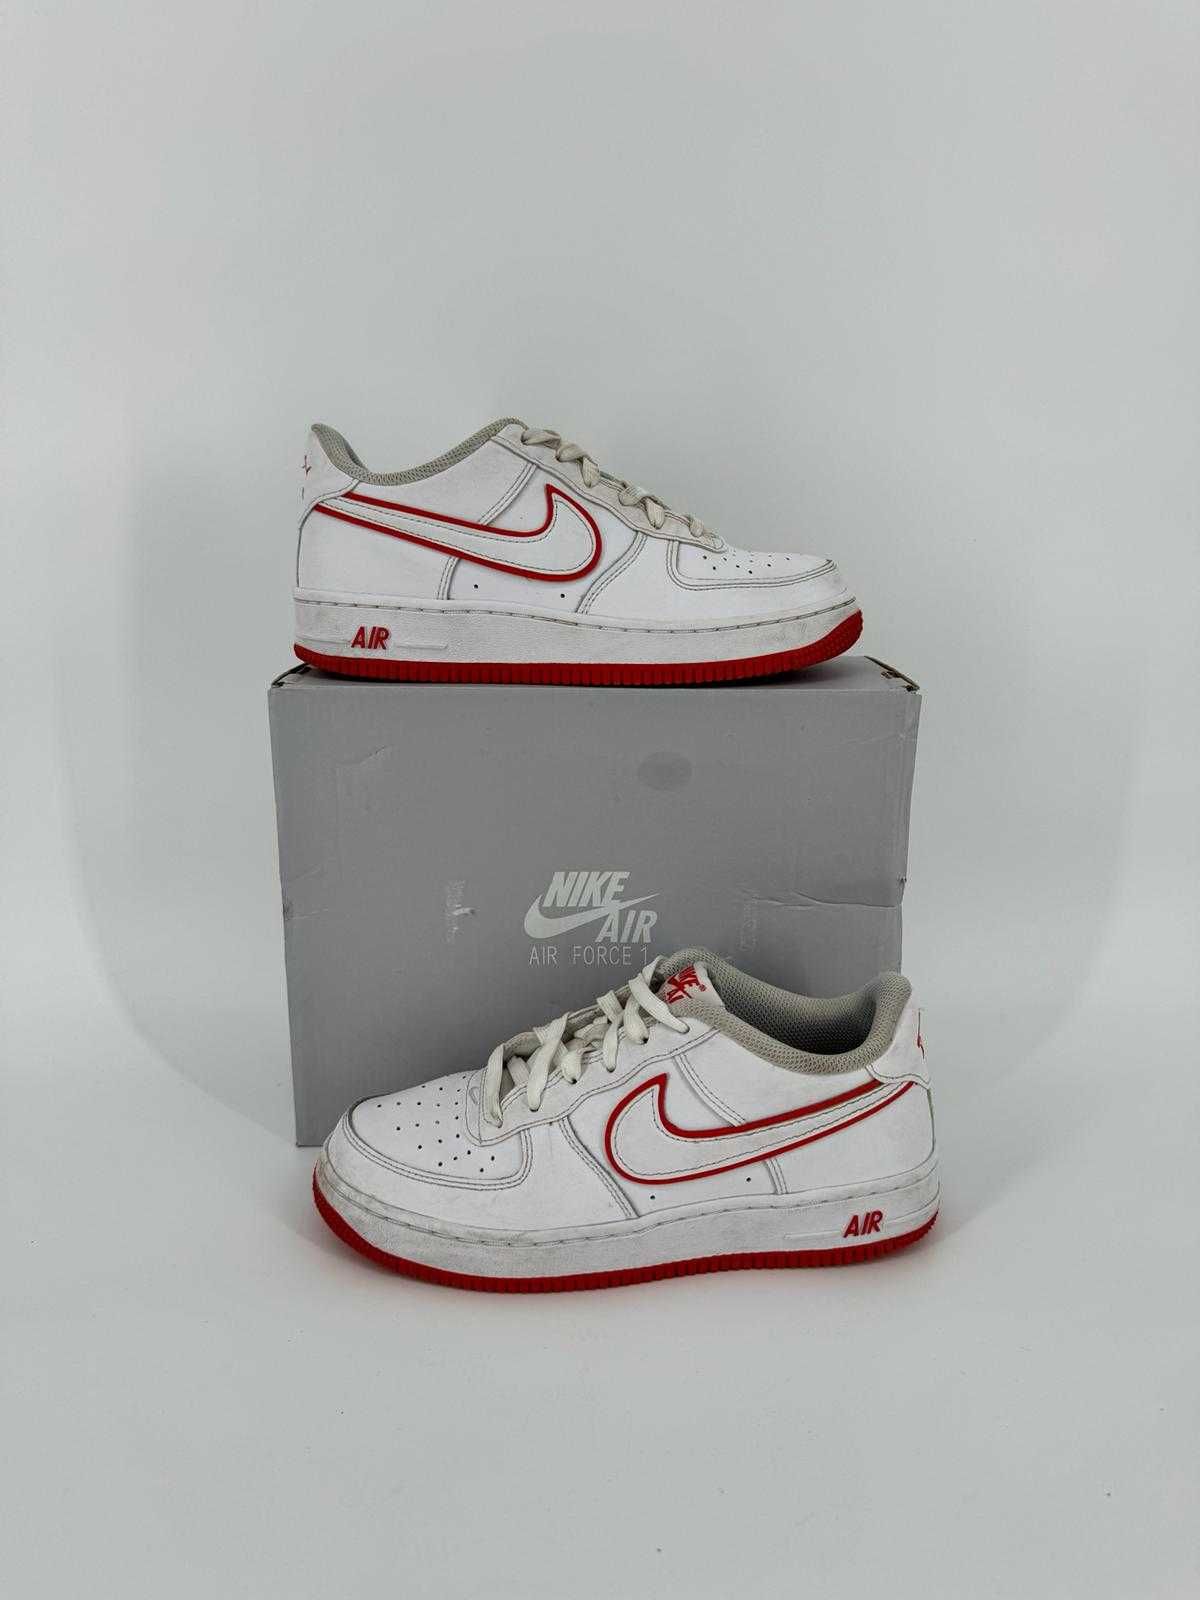 Nike air force 1 białe czerwone sneakersy damskie niskie sportowe buty